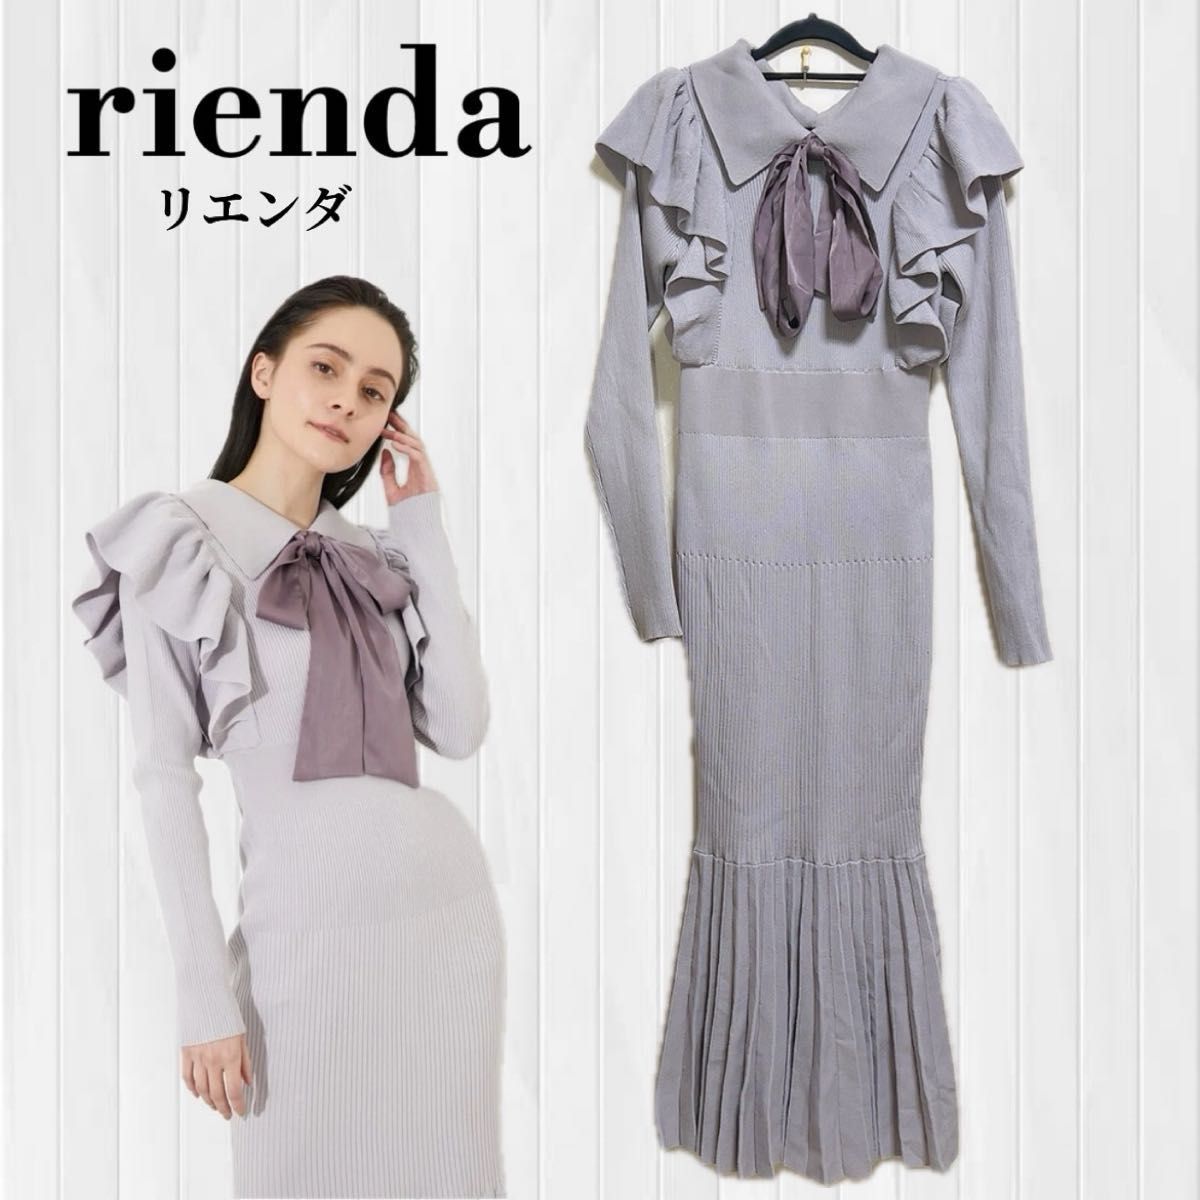 【美品】rienda リエンダ スカーフリボンビッグカラーマーメイドニットワンピース 